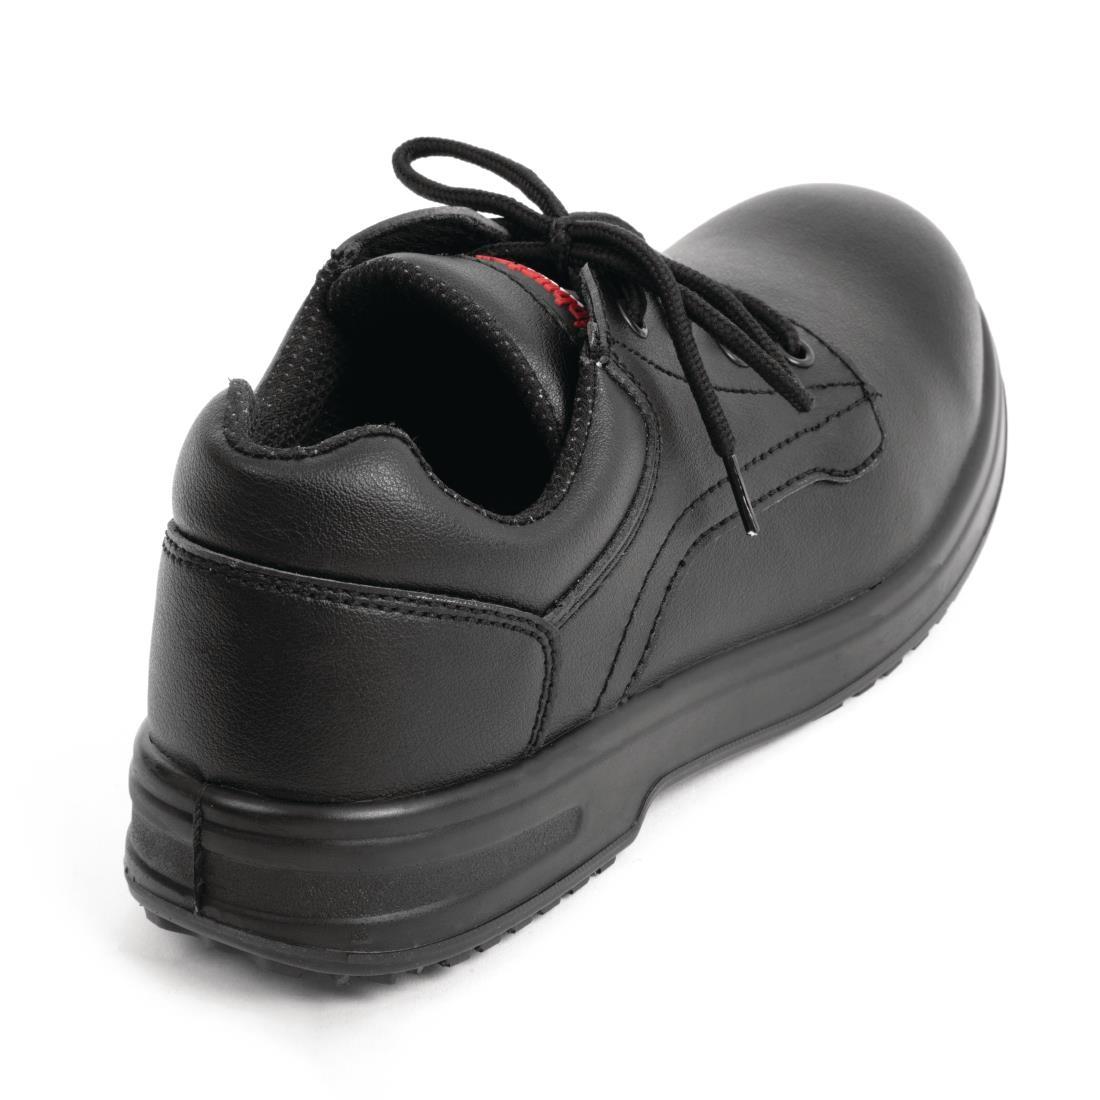 Slipbuster Basic Toe Cap Safety Shoes Black 37 - BB497-37  - 3